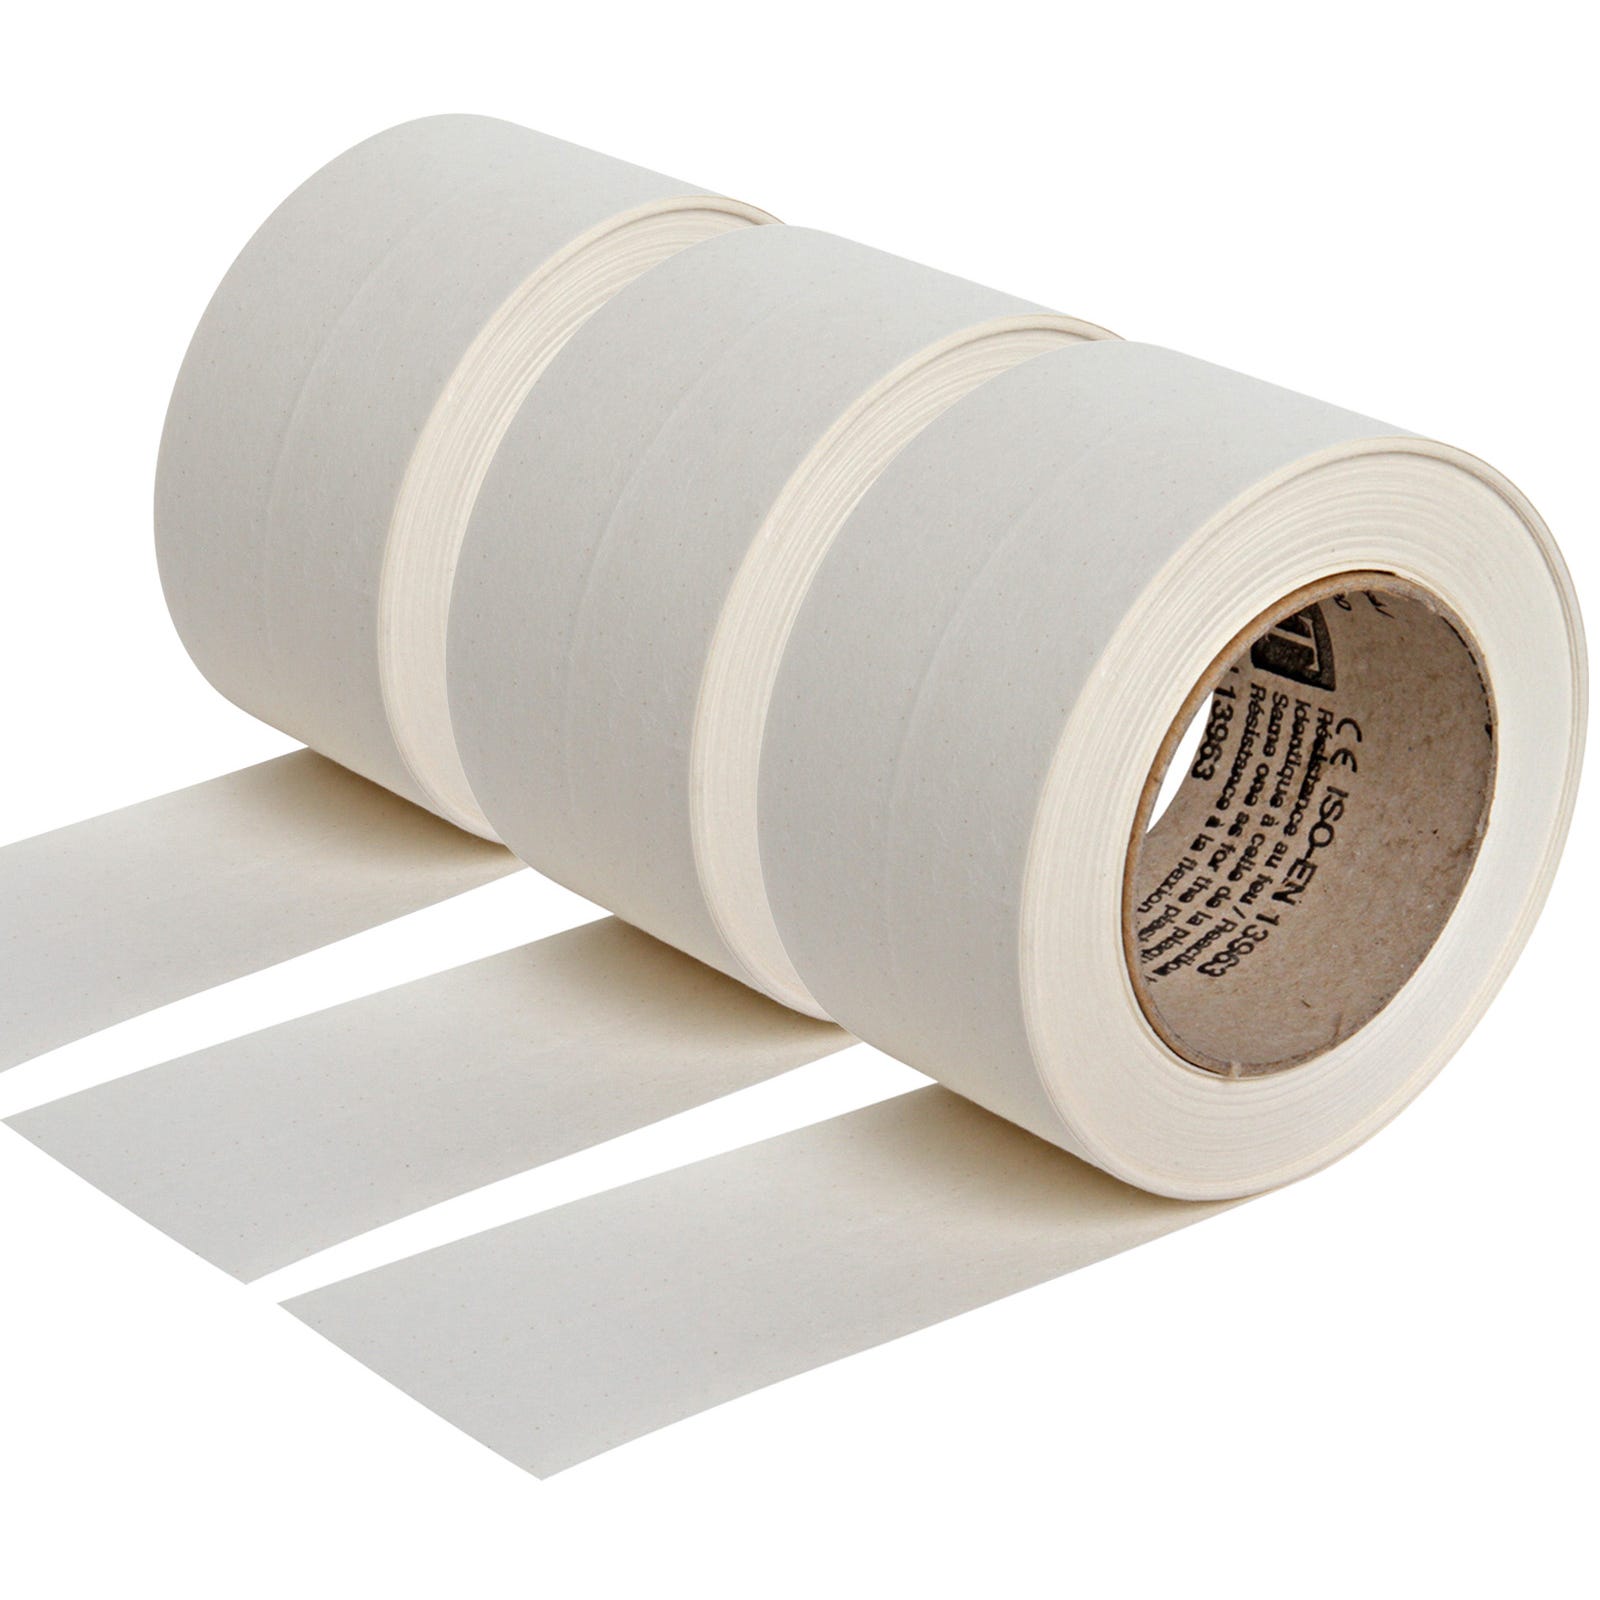 Lot de 3 bandes joint papier kraft Semin pour réaliser les joints des plaques de plâtre en association avec un enduit - 23 m sous blister 0